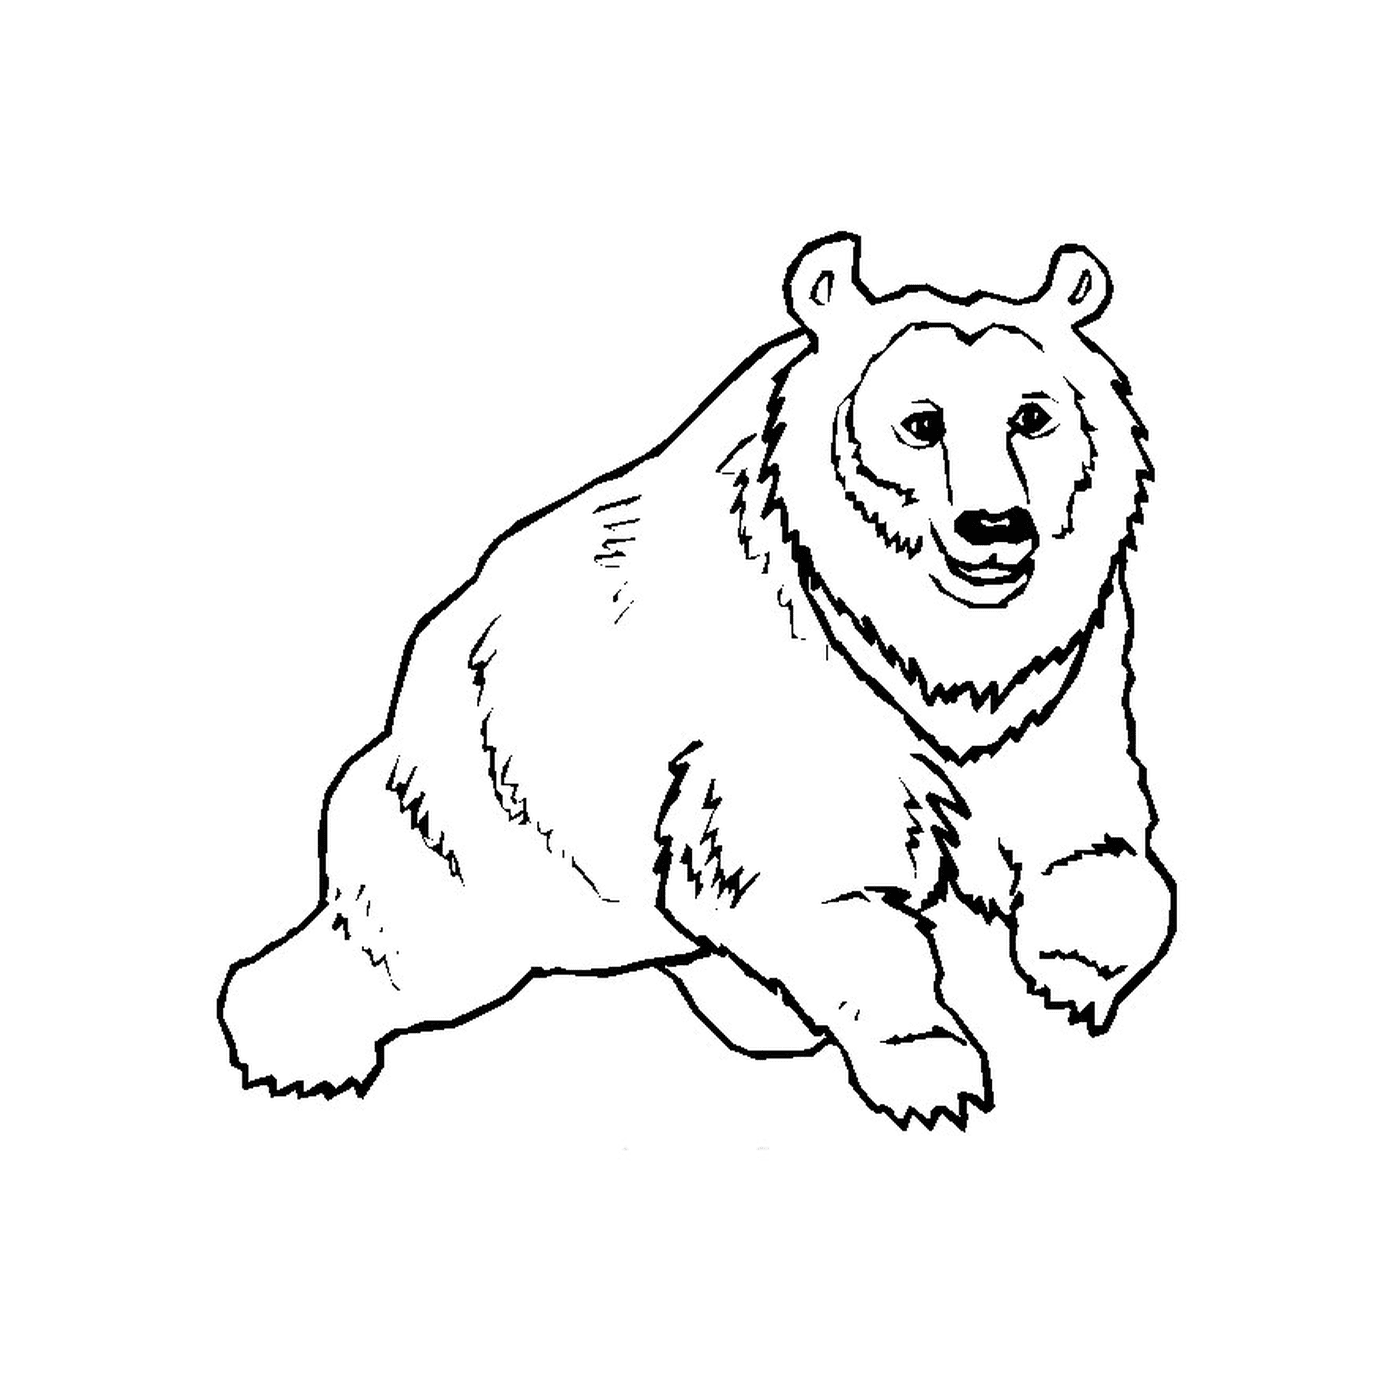  A bear 